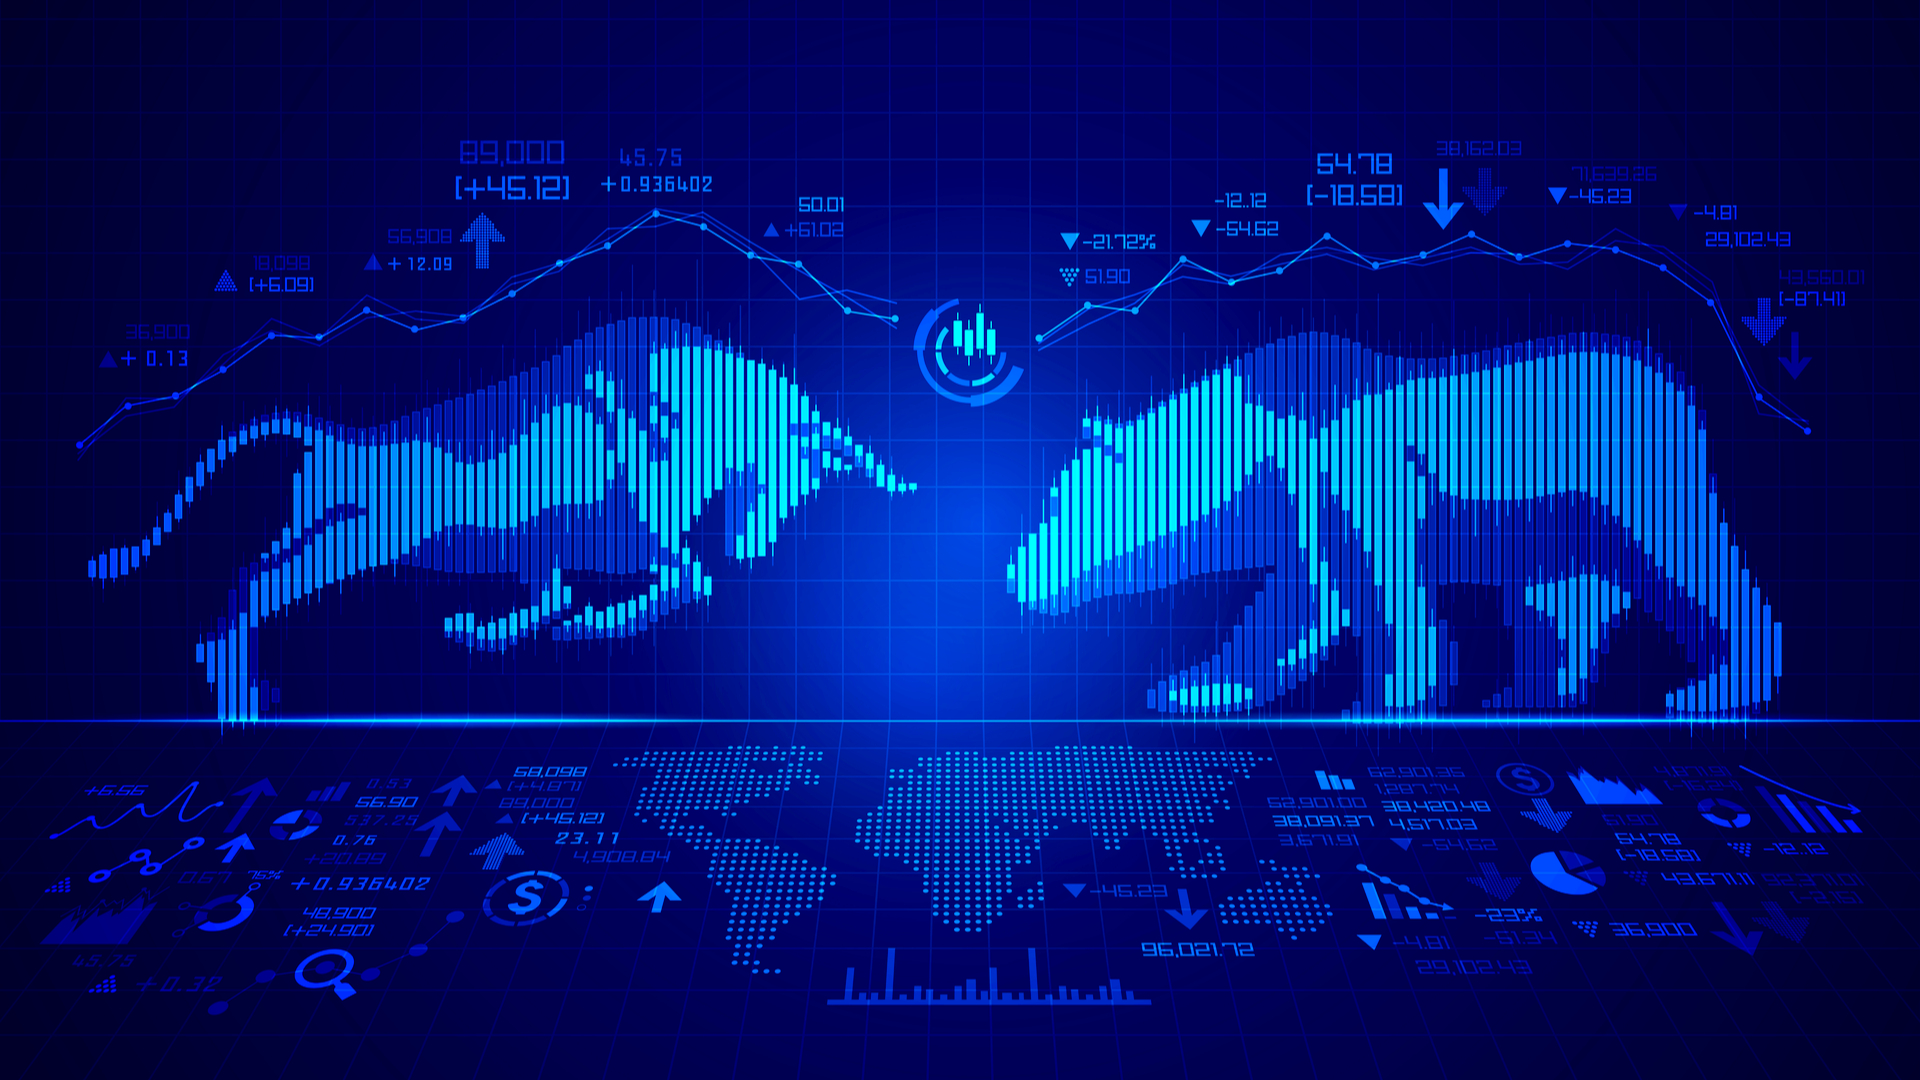 Bull vs bear market terminology explained HWM